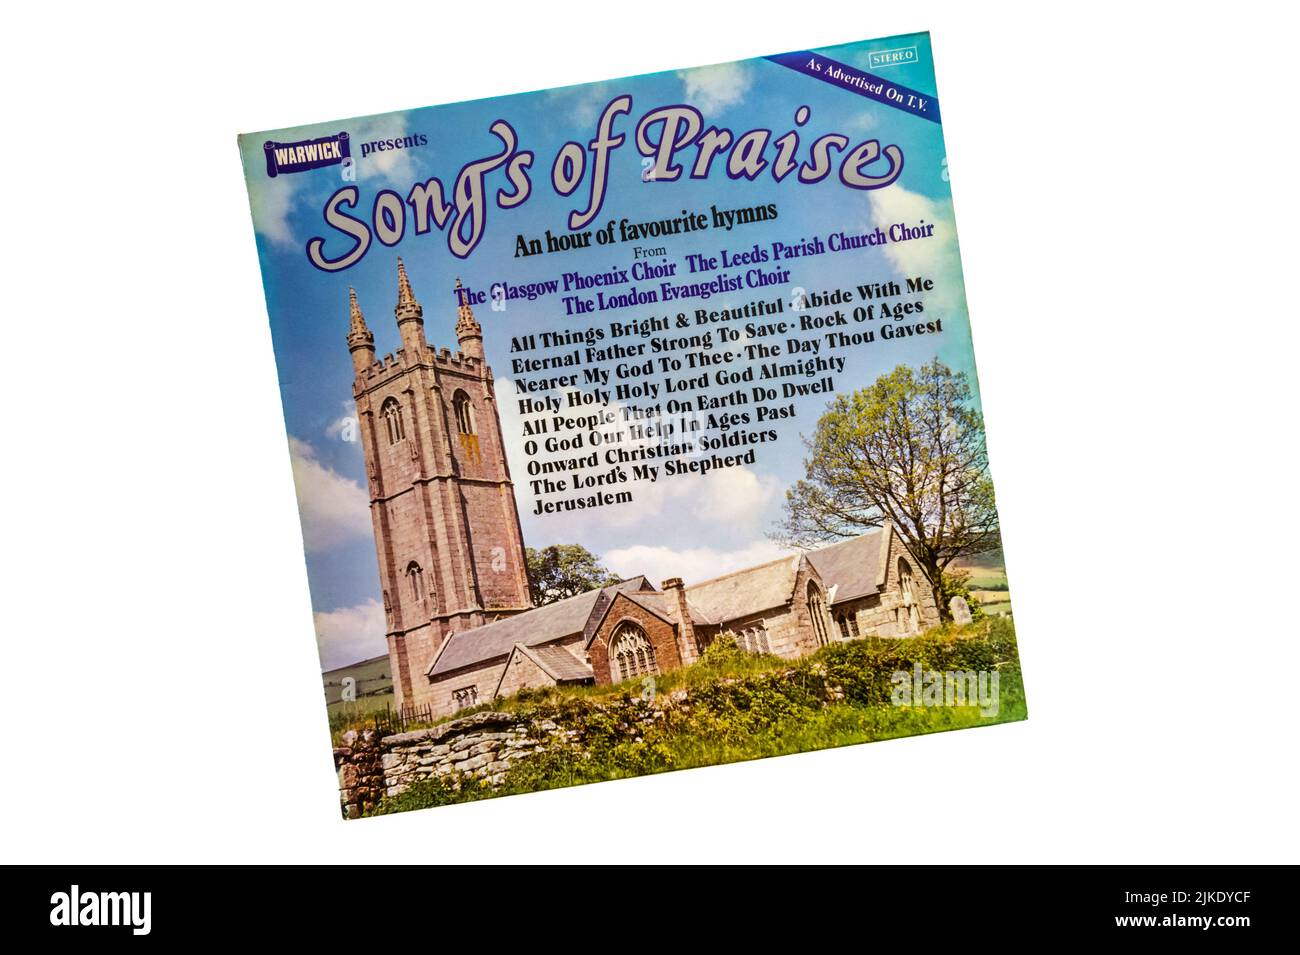 Canciones de alabanza, una hora de himnos favoritos del Coro de Glasgow Phoenix, el Coro de la Iglesia Parroquial de Leeds y el Coro Evangelista de Londres. Foto de stock